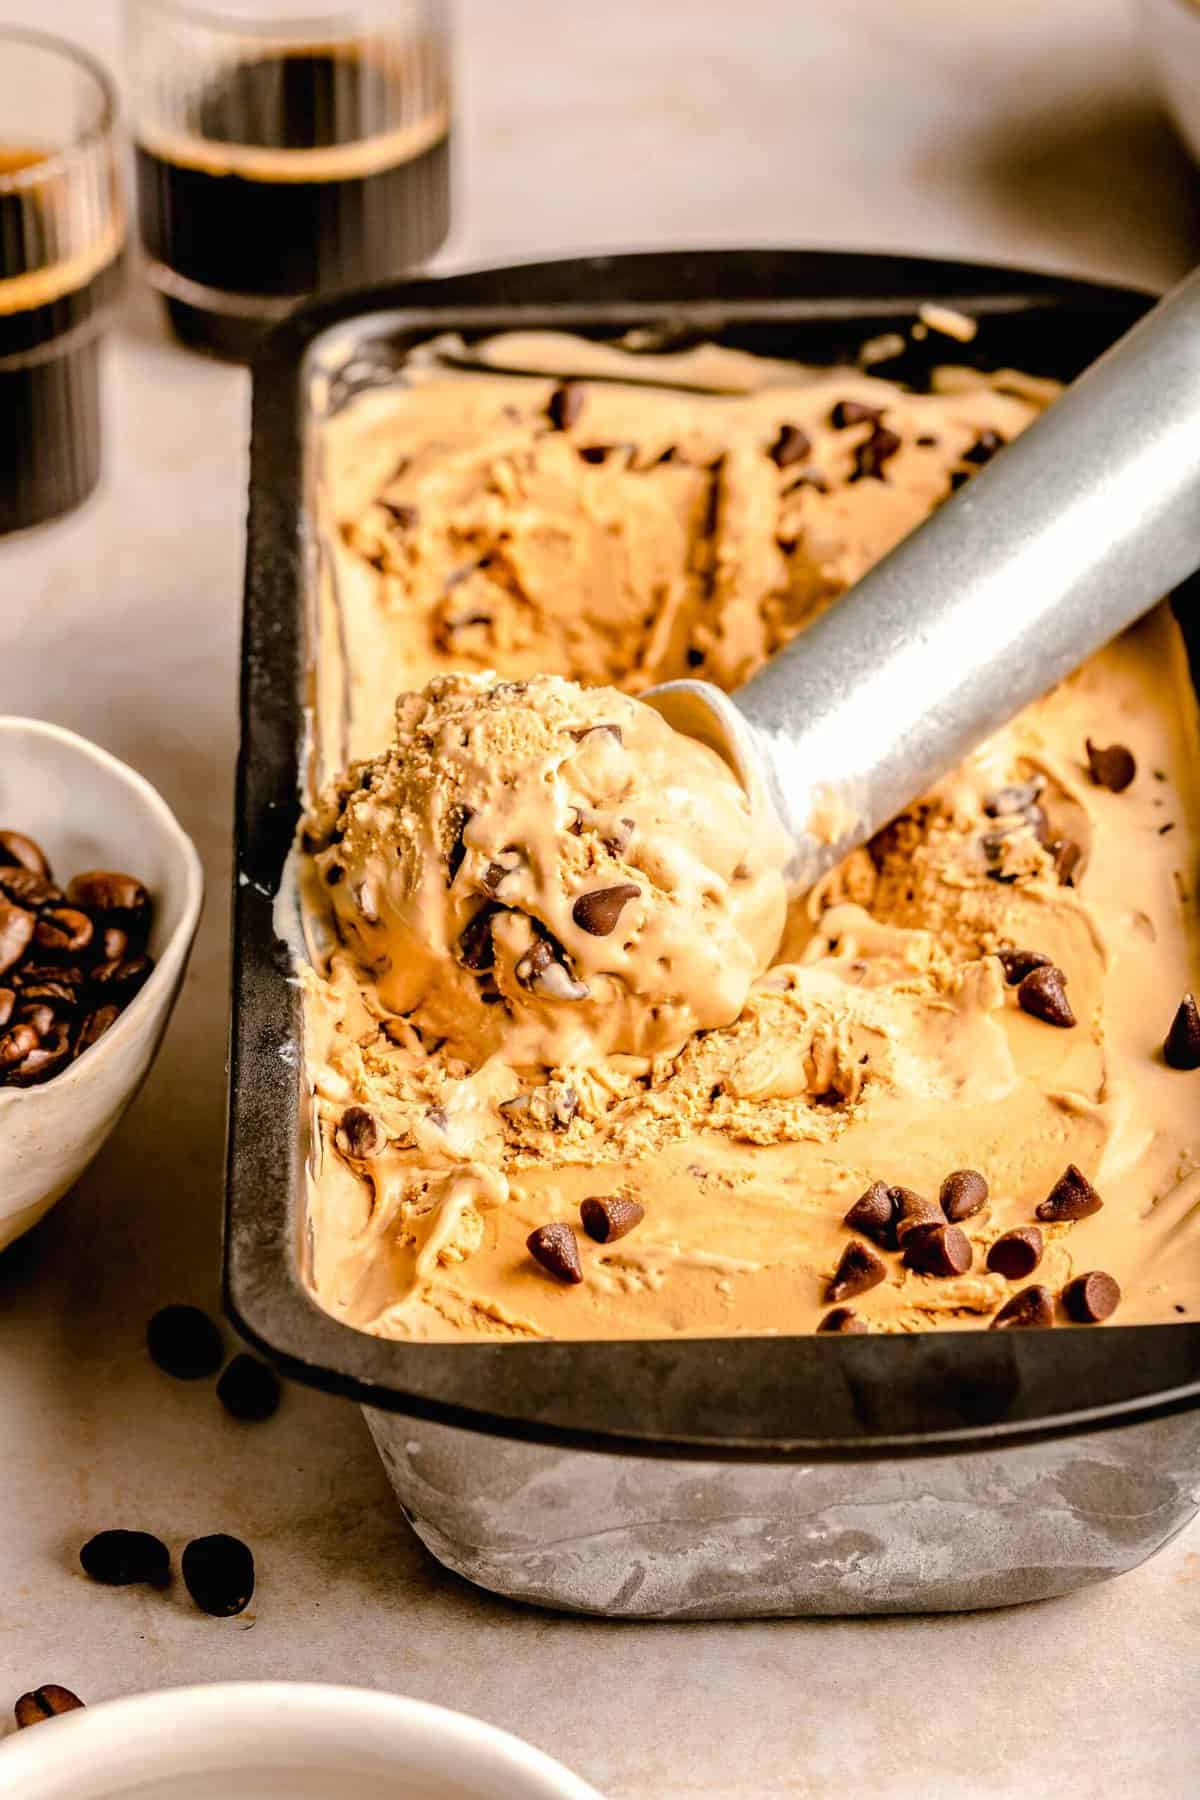 KitchenAid Ice Cream Maker Attachment - Baking Bites